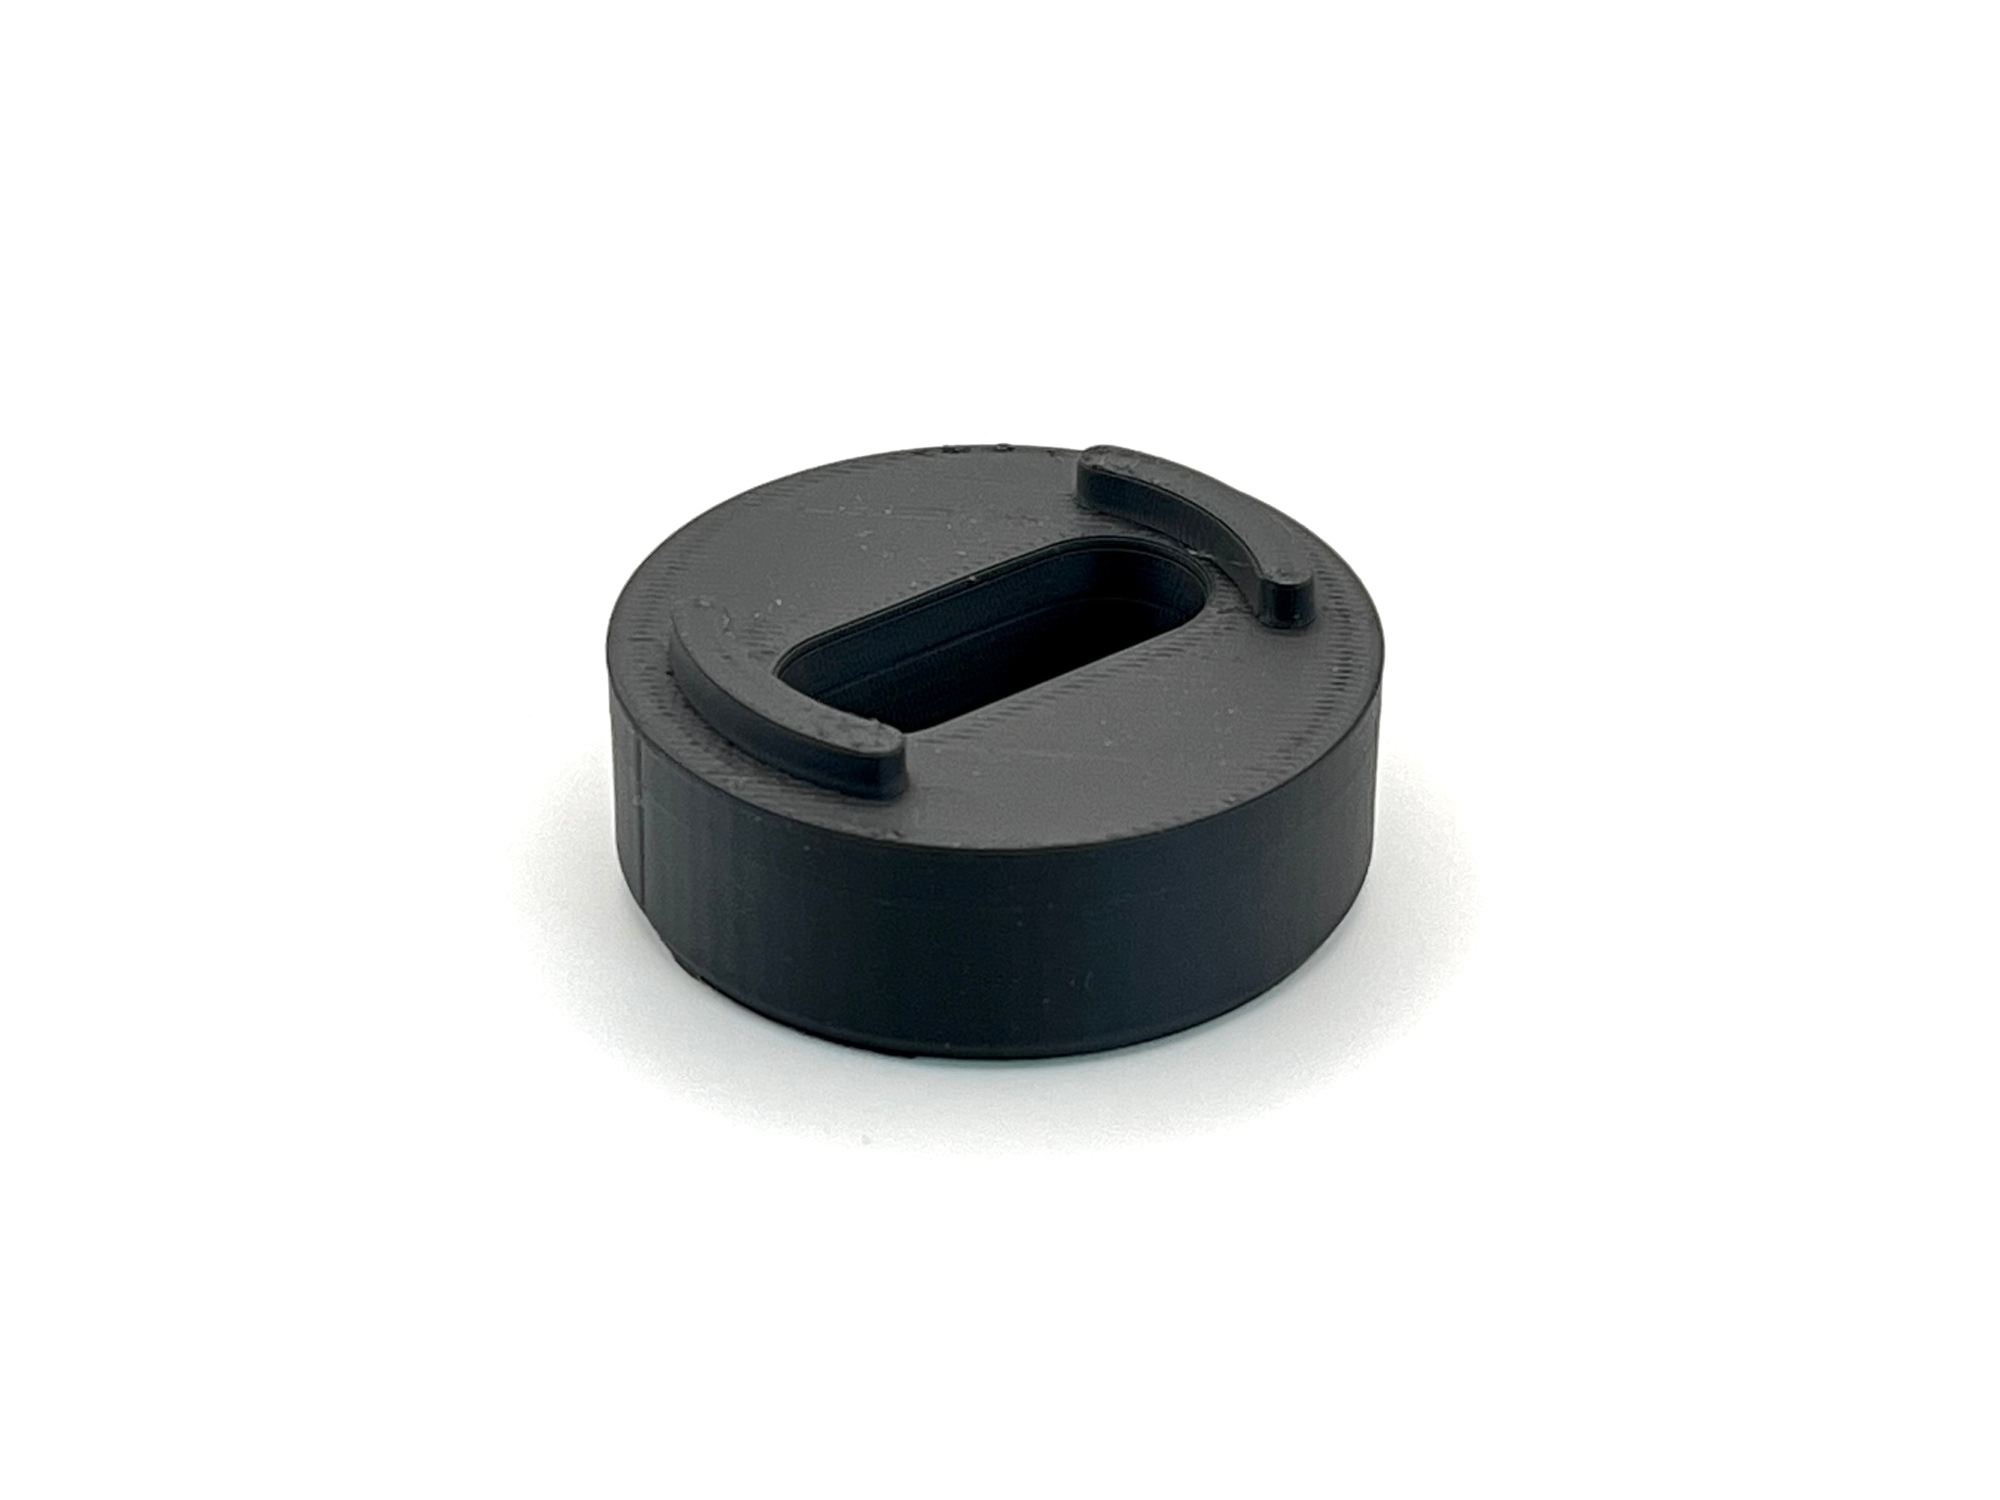 Evolve3D Air Venturi Avenge-X Bottle Magnetic Foster Fitting Cover, Black